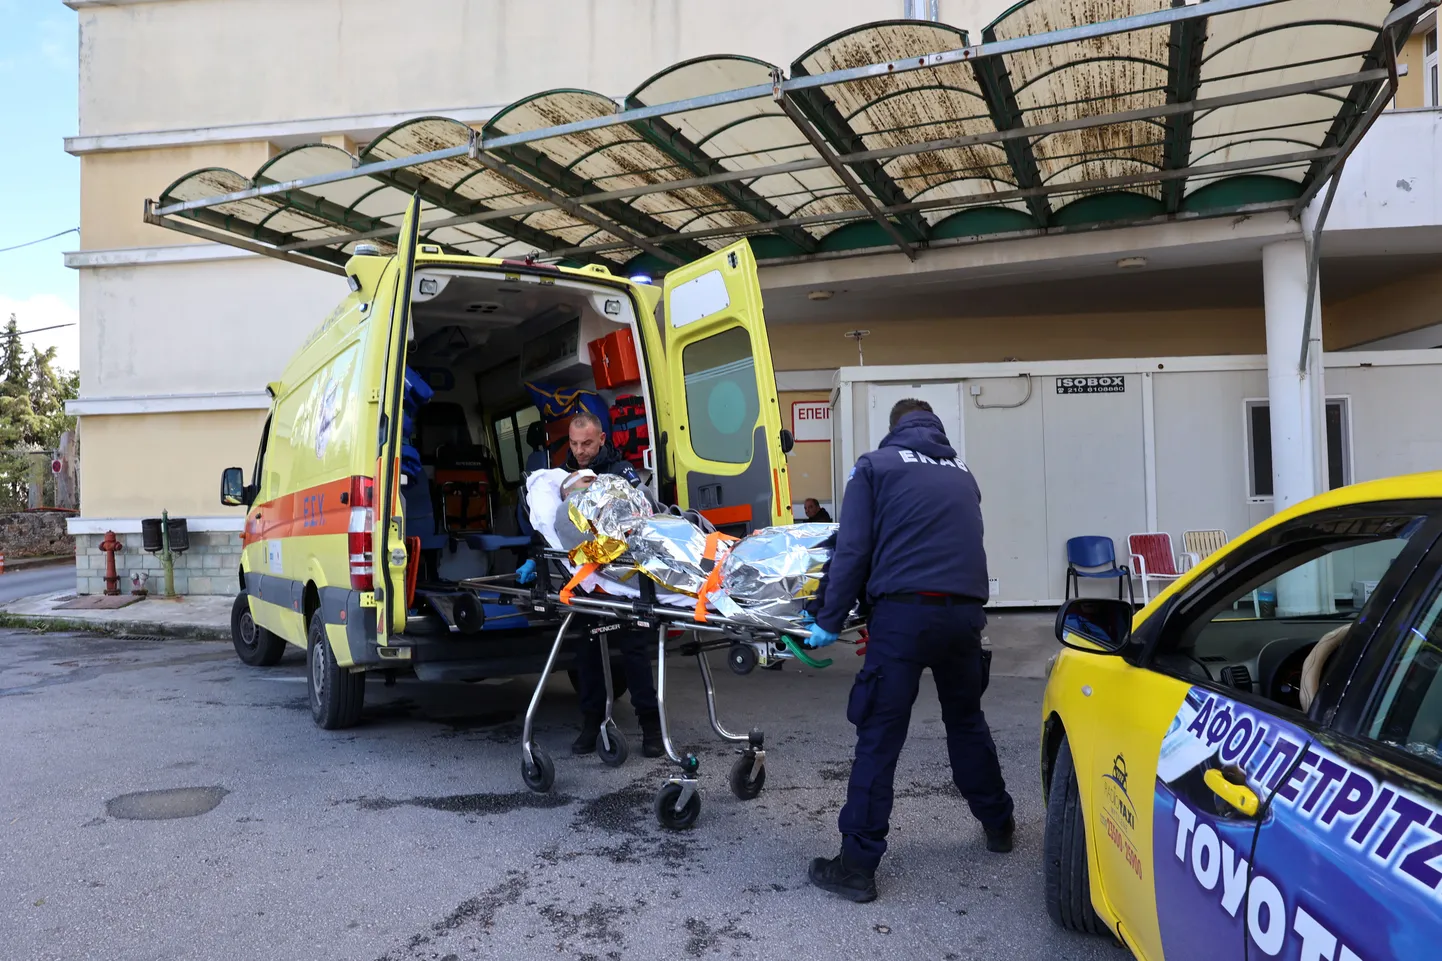 Kreeka saare Lesbose lähistel põhja läinud kaubalaevalt seni ainus päästetud meeskonnaliige toimetati kohalikku haiglasse.